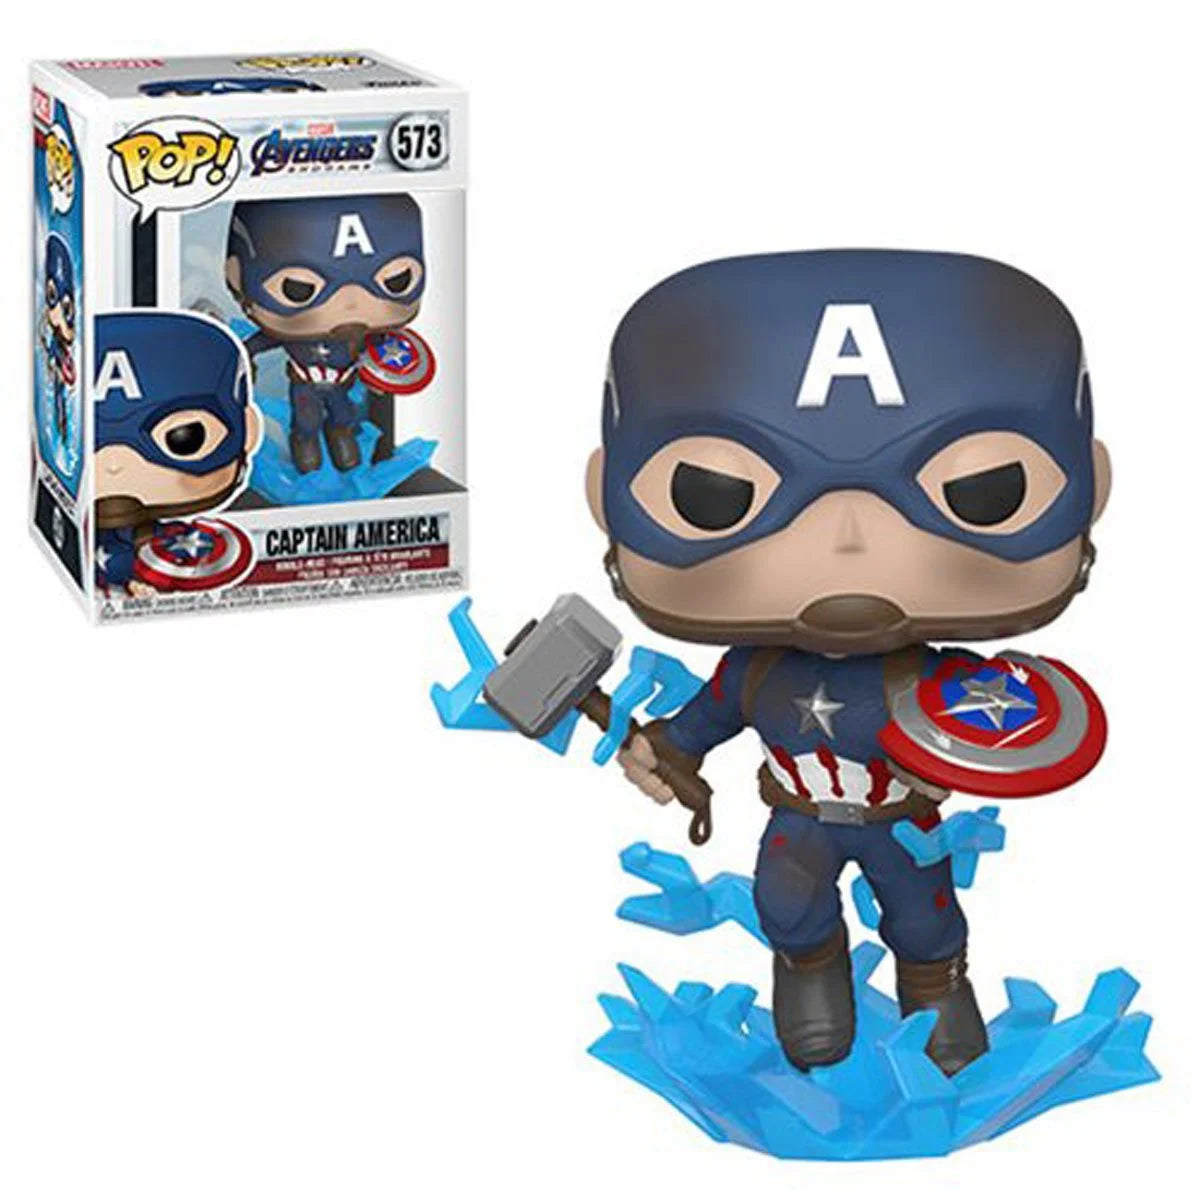 Captain America with Broken Shield Avengers Endgame  Pop! Vinyl Figure